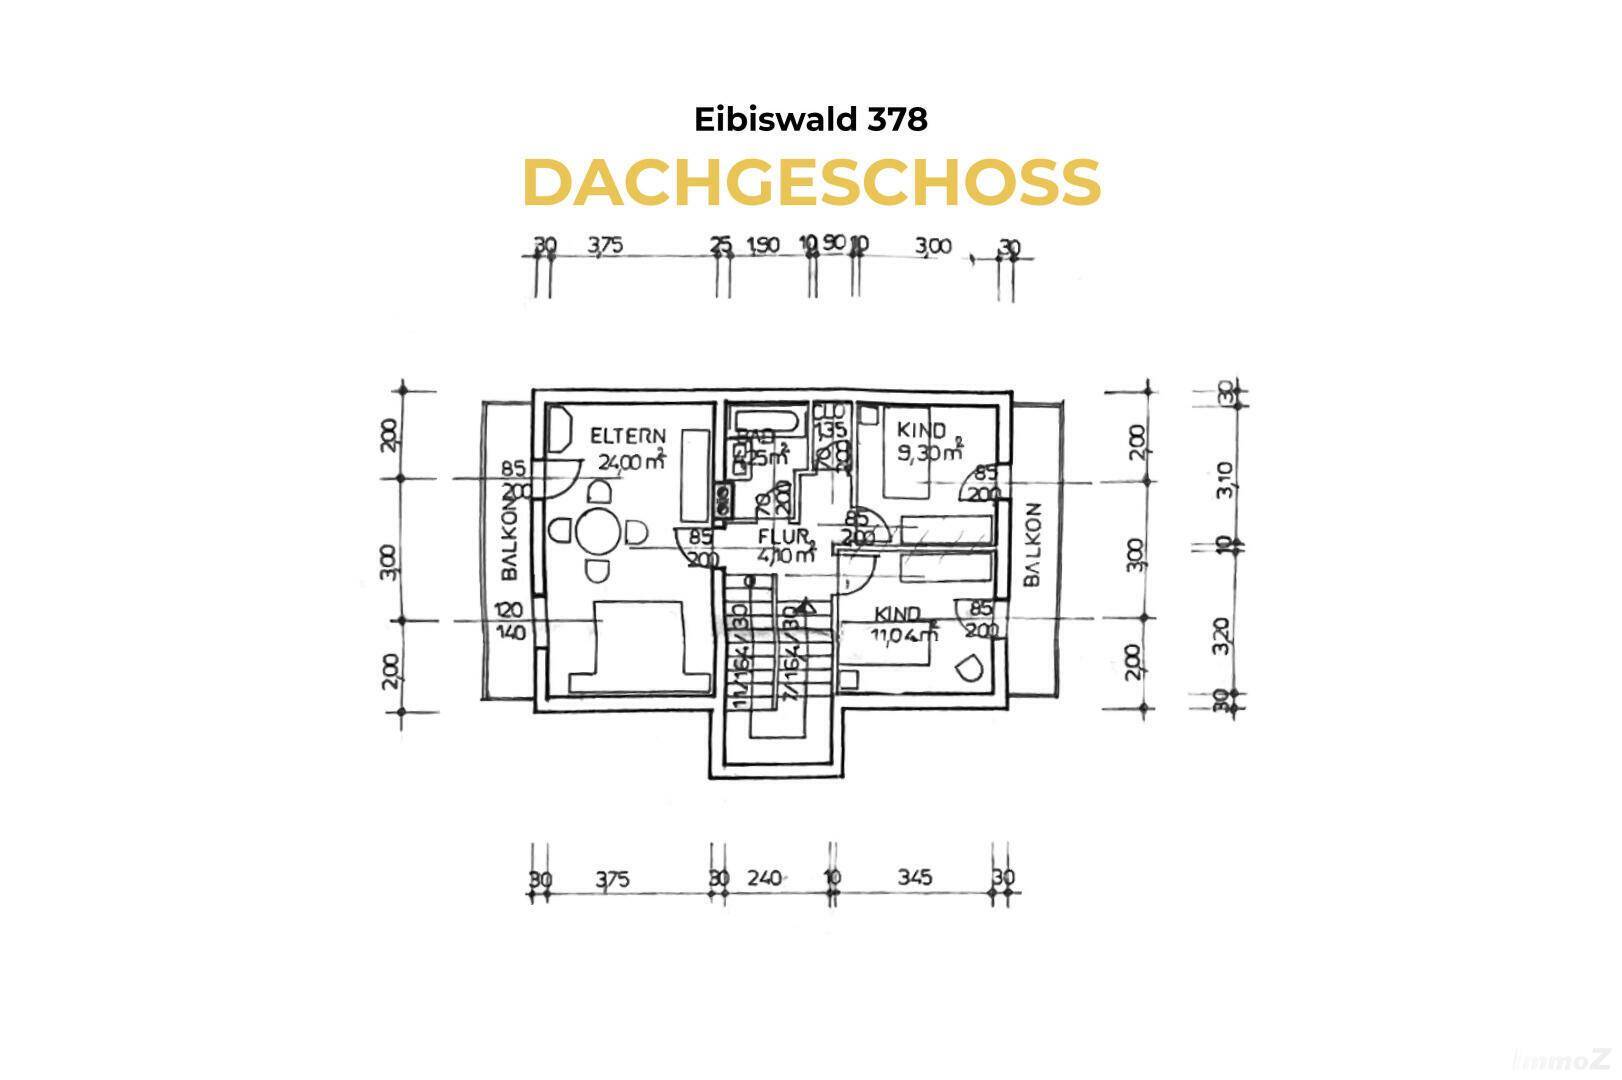 2 Eibiswald 378 - Grundriss DG